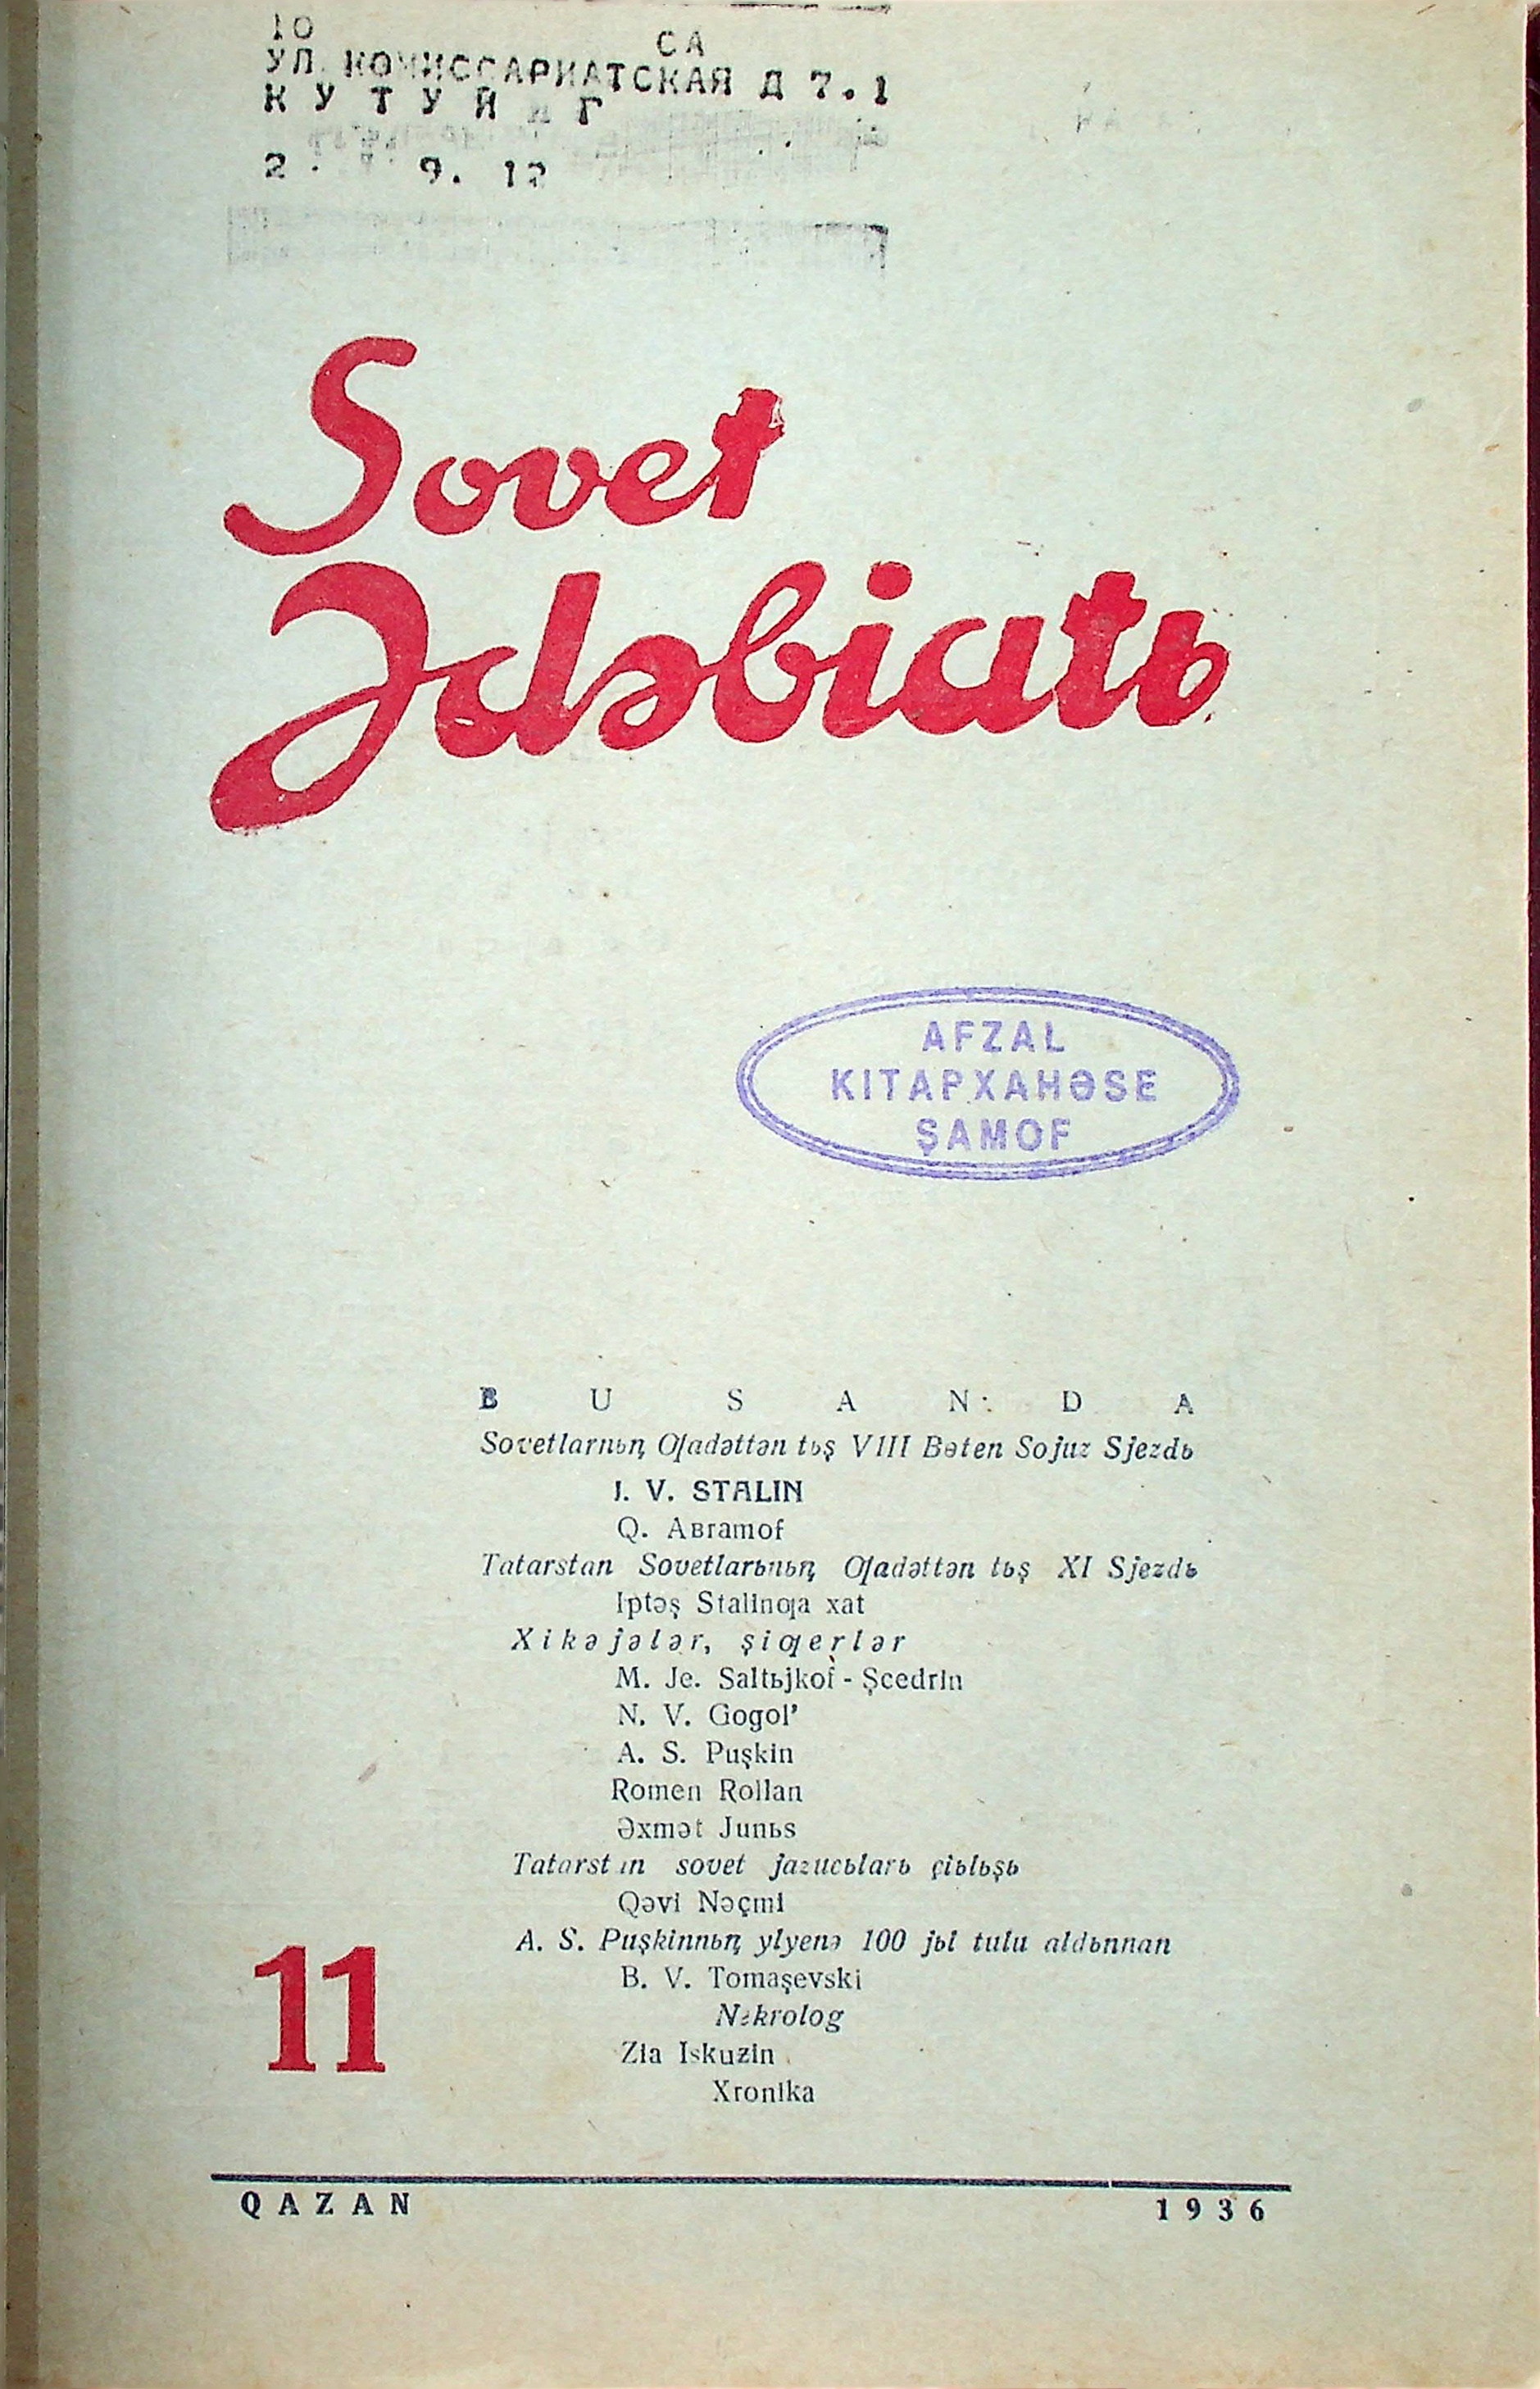 Фото журнала 1936 года. Выпуск номер 11